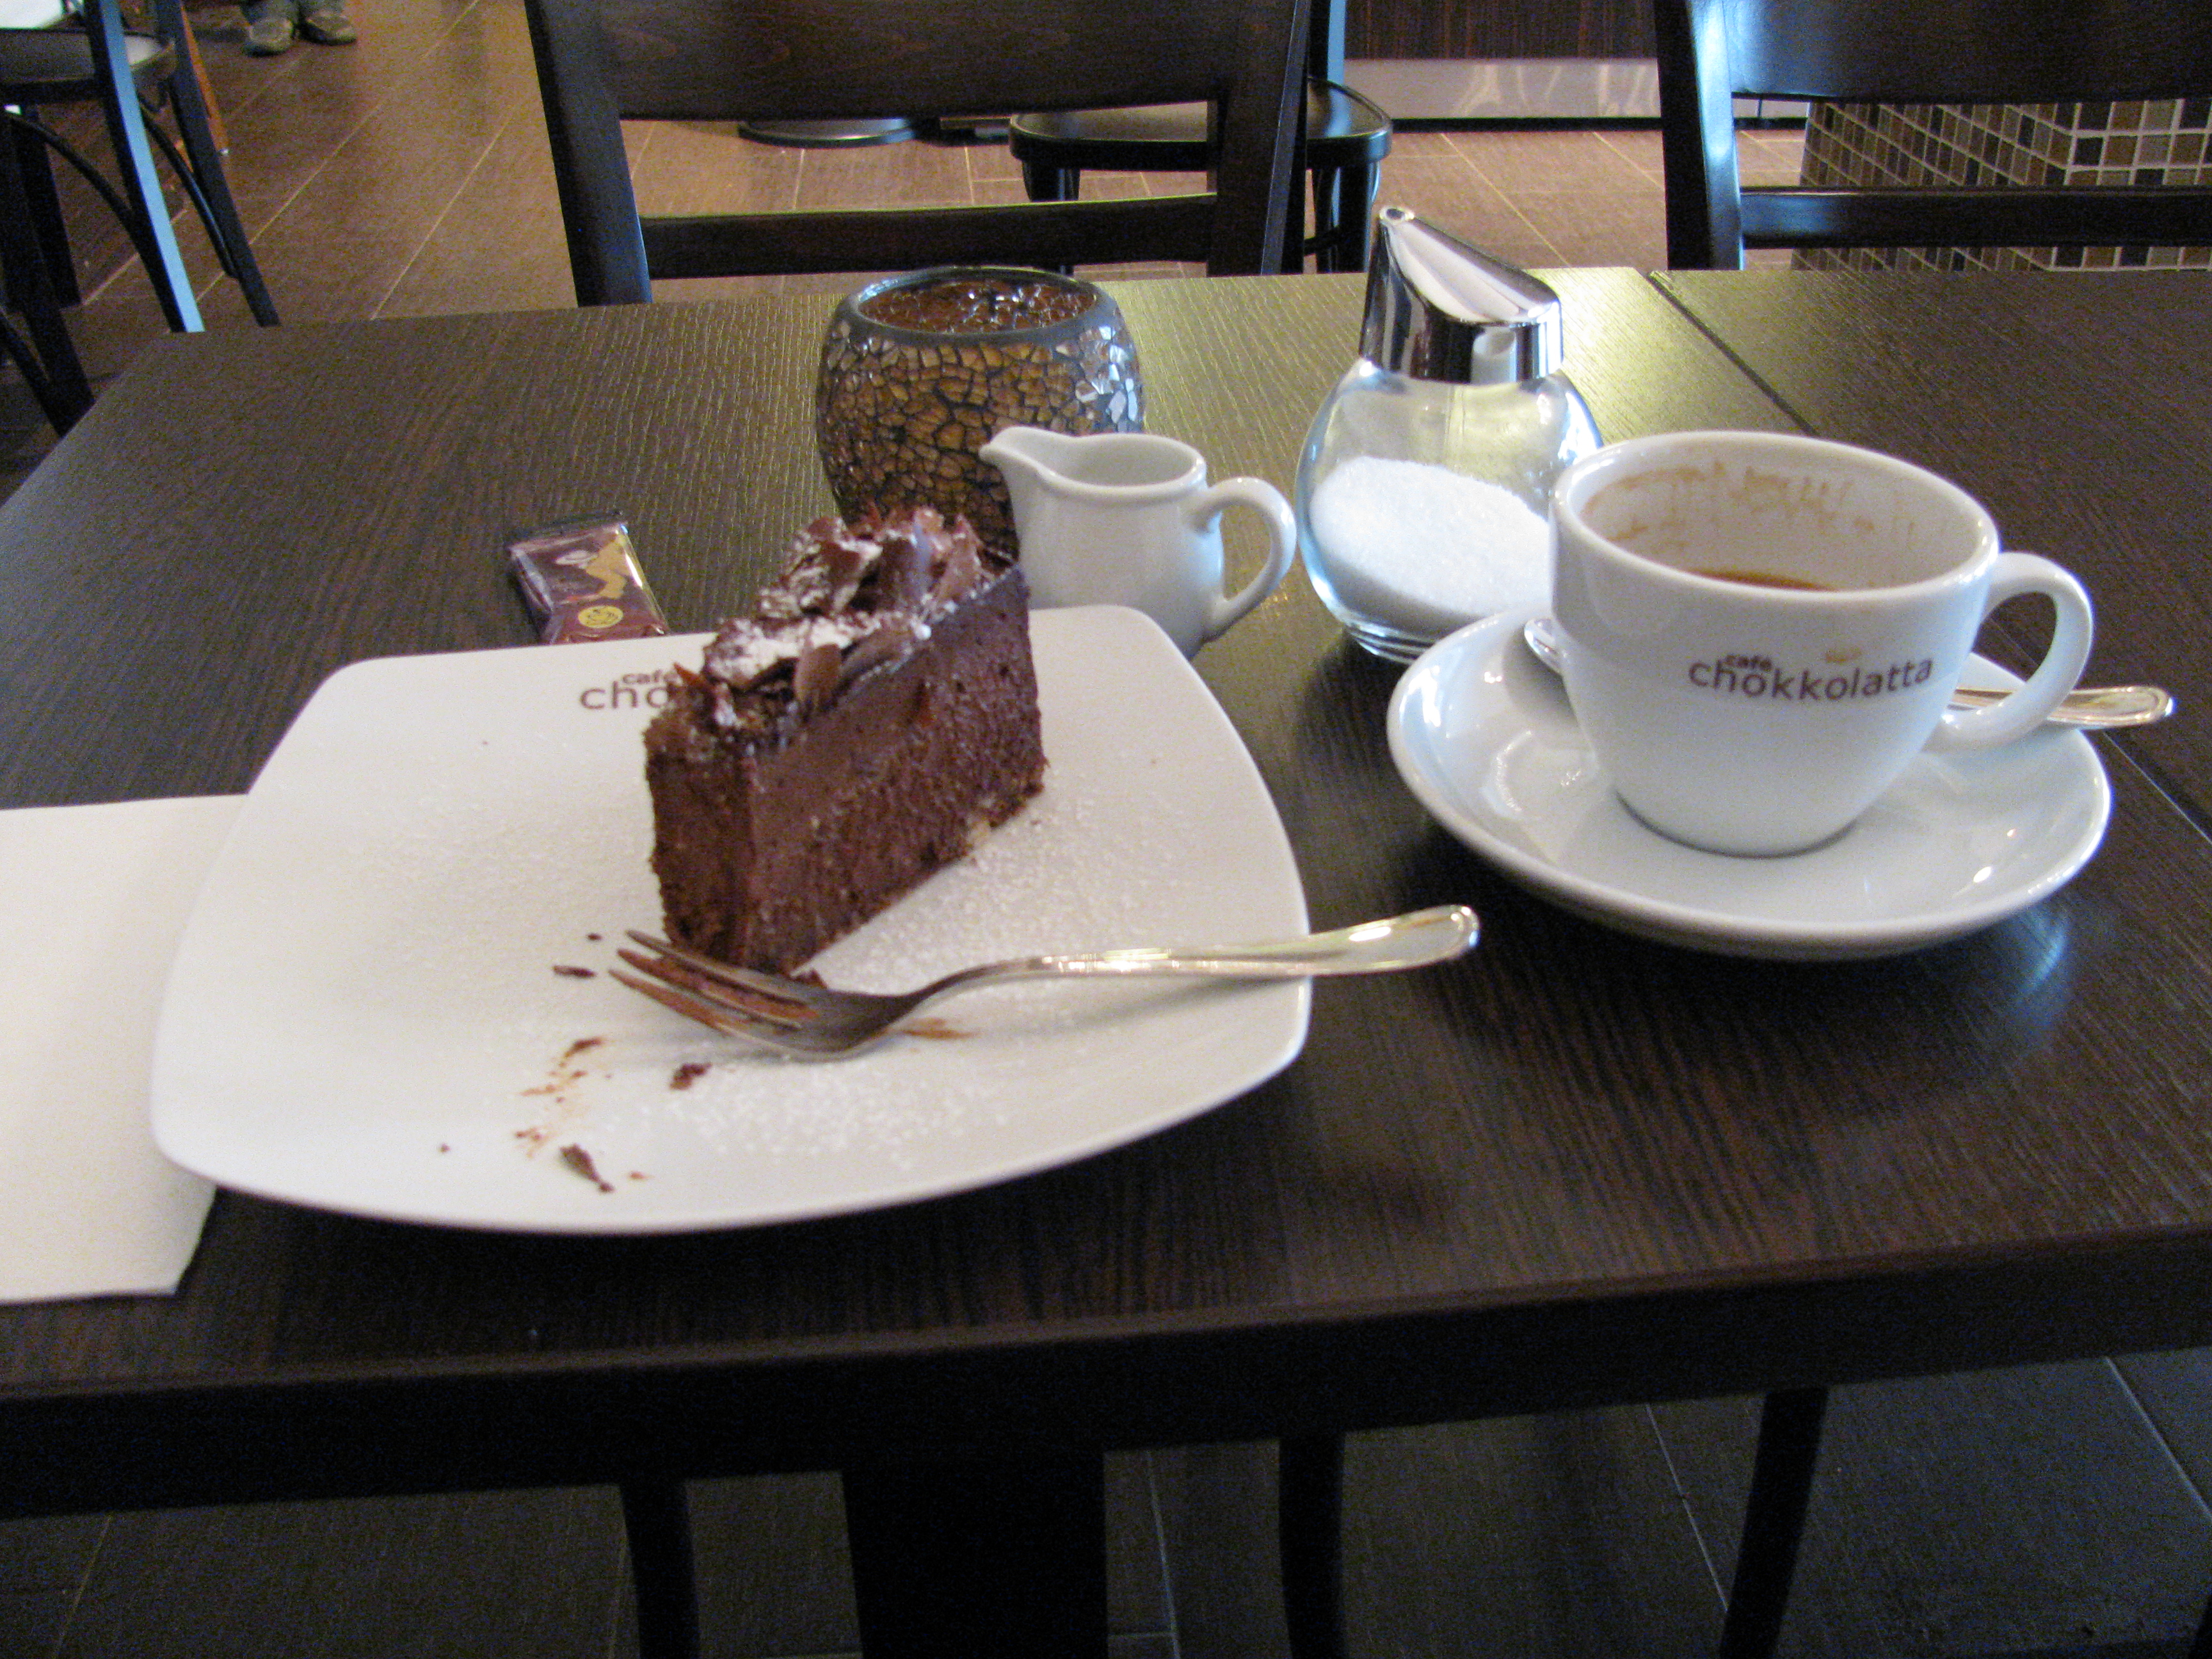 Schokoladen-Cheesecake, sehr lecker!!! Und eine schöne Tasse Cafe Crema!!! :) Mein Menu dort !!! ;)